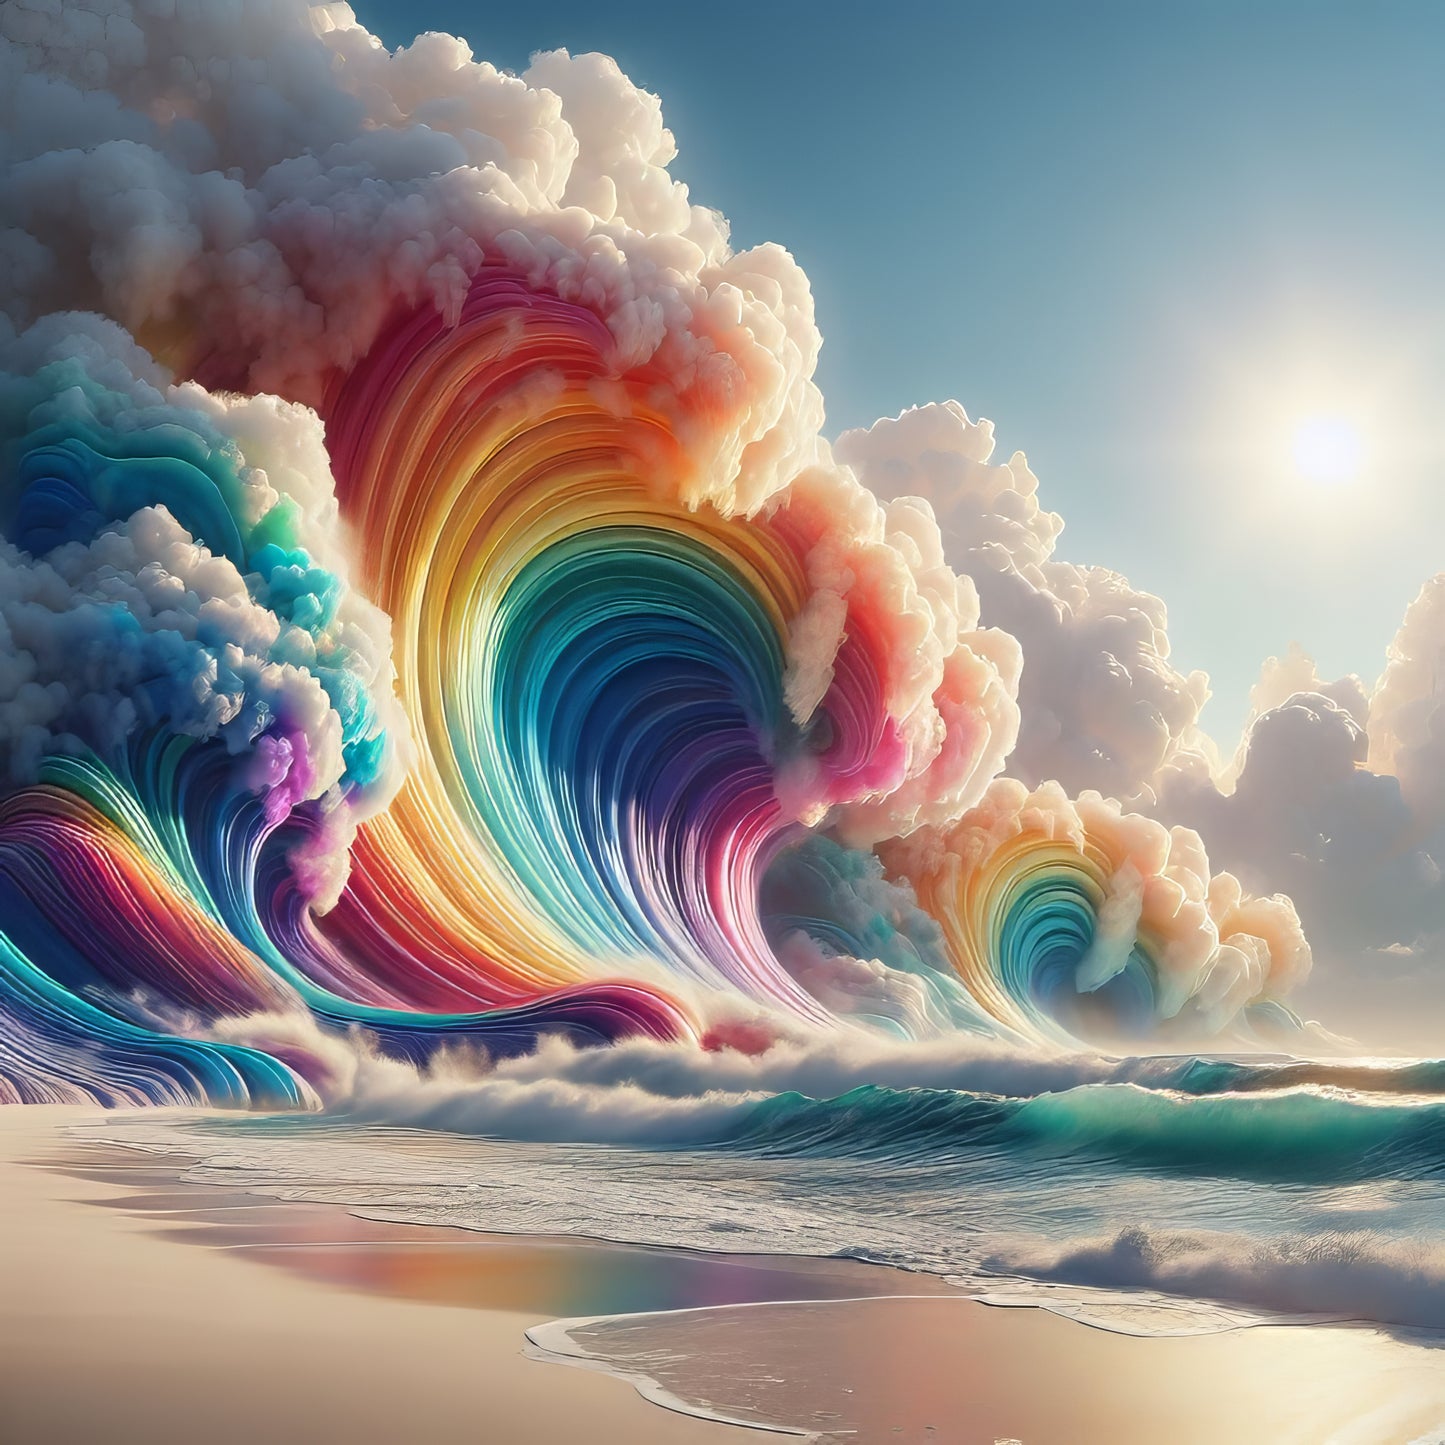 Rainbow Surge - Art Print